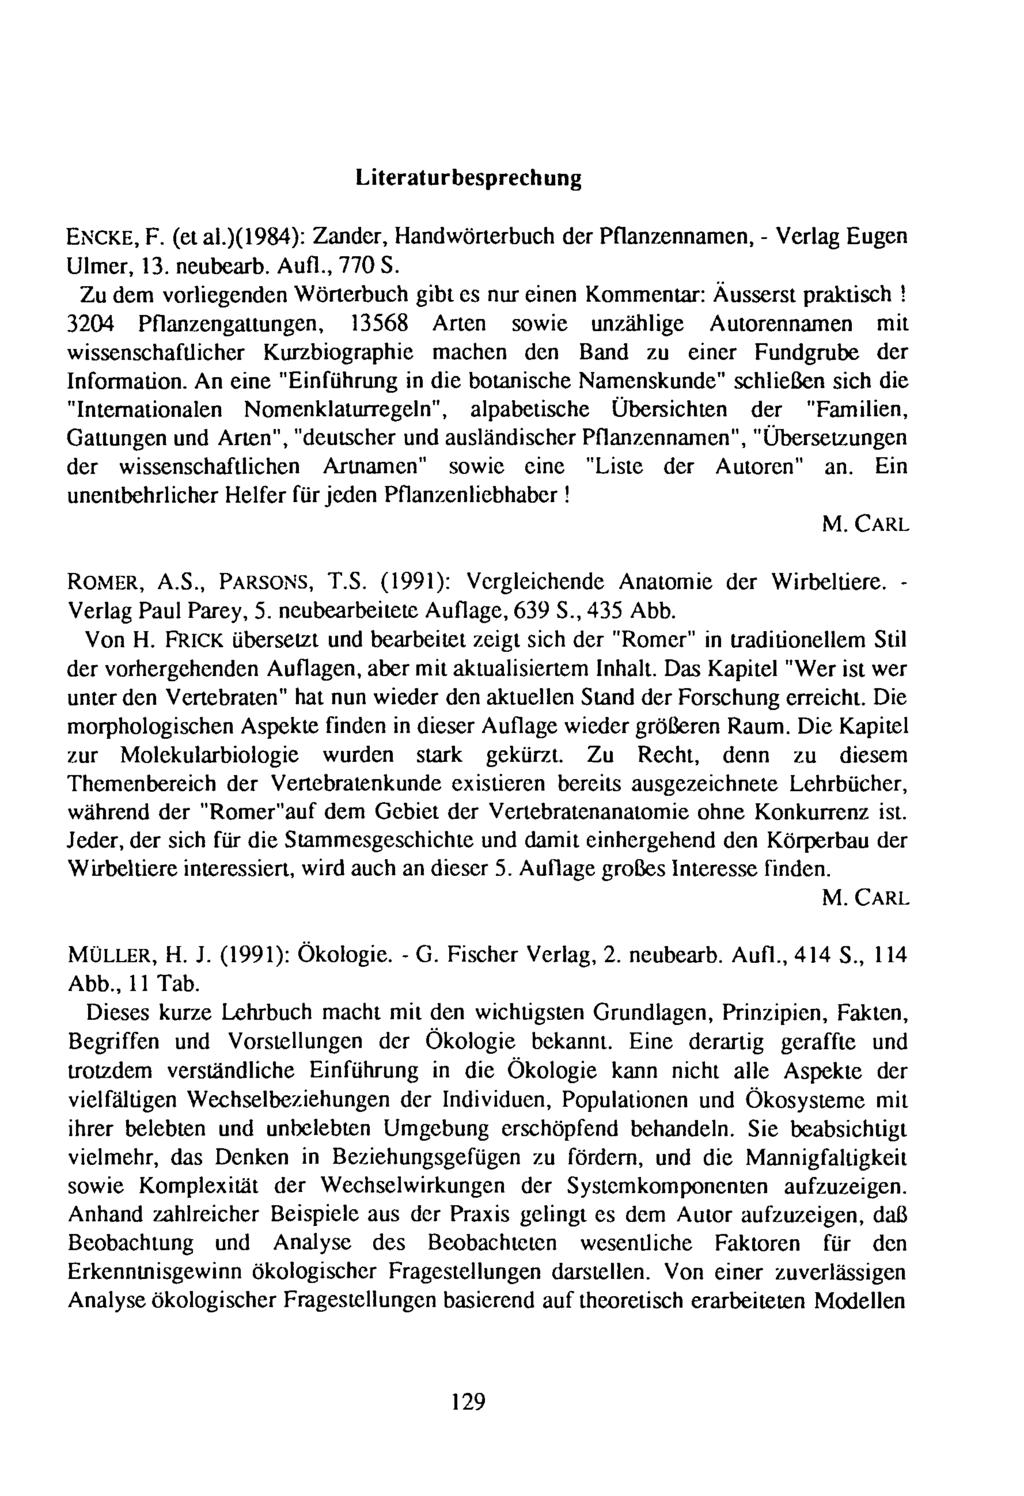 Literaturbesprechung ENCKE, F. (etal.)(1984): Zander, Handwörterbuch der Pflanzennamen, - Verlag Eugen Ulmer, 13. neubearb. Aufl., 770 S.